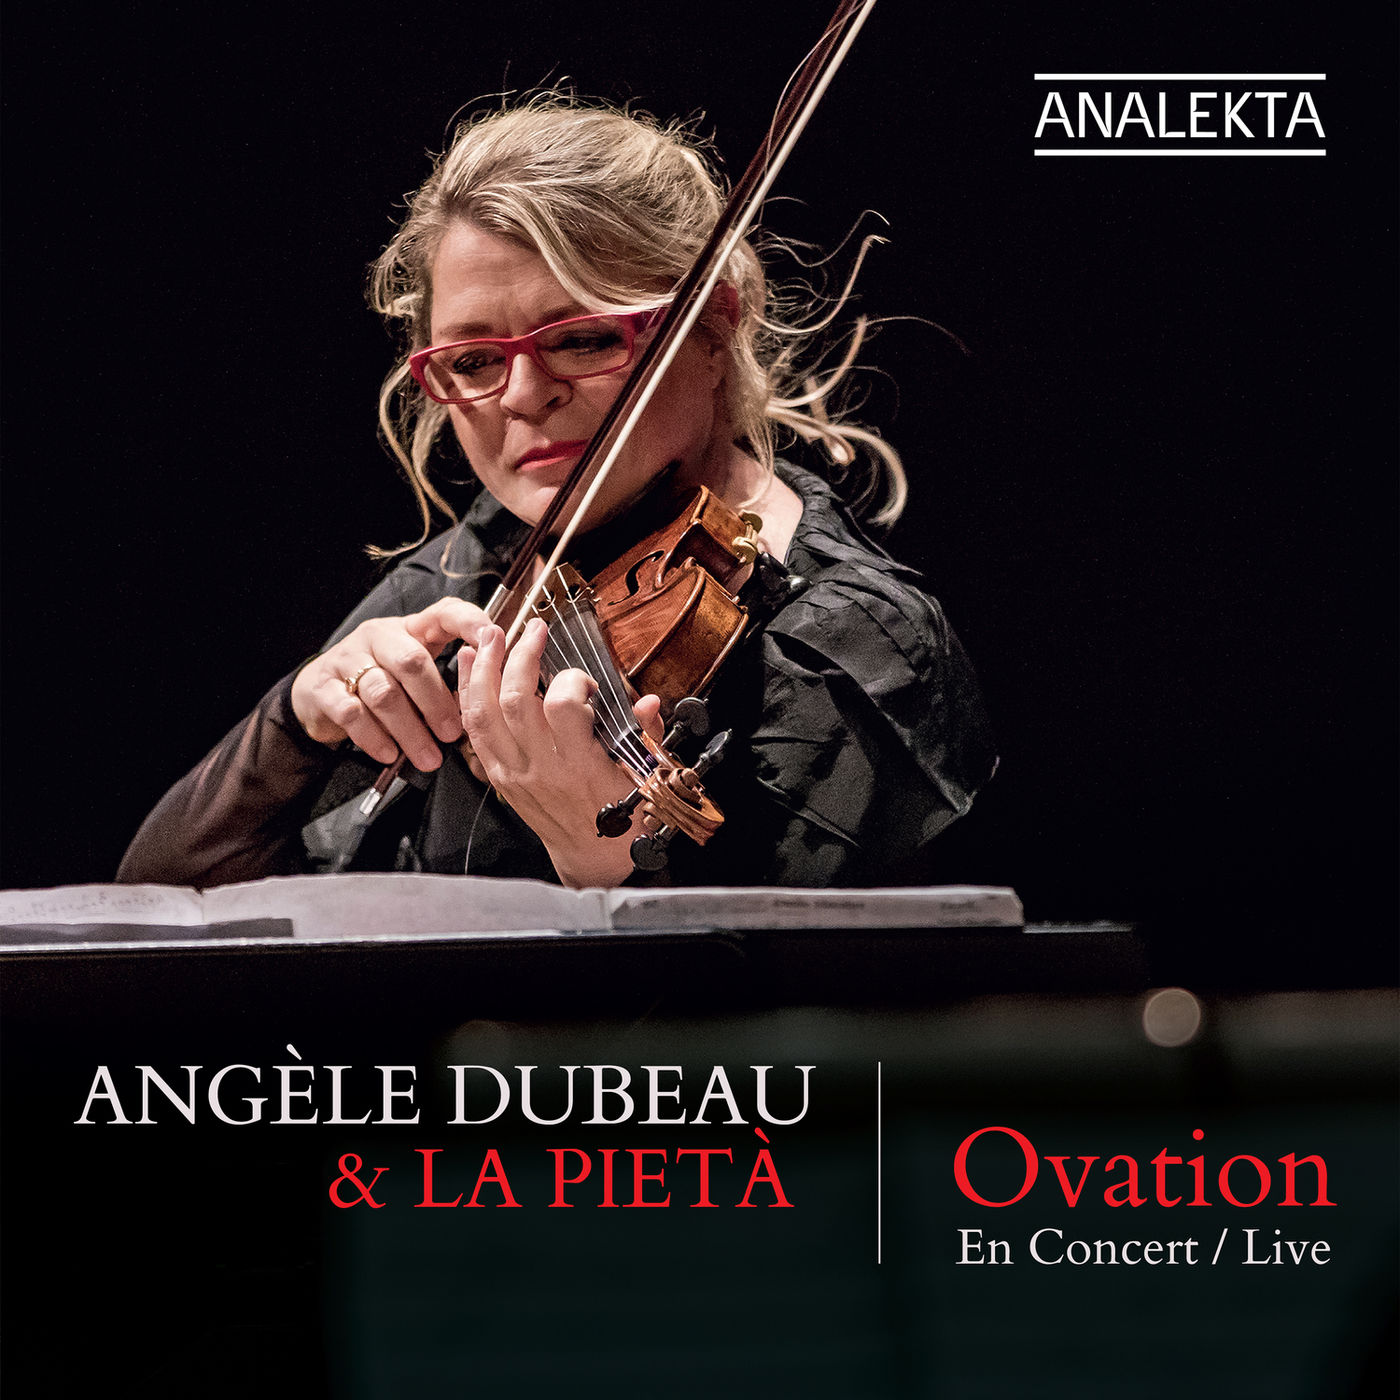 Angèle Dubeau & La Pietà – Ovation (2018) [Official Digital Download 24bit/48kHz]